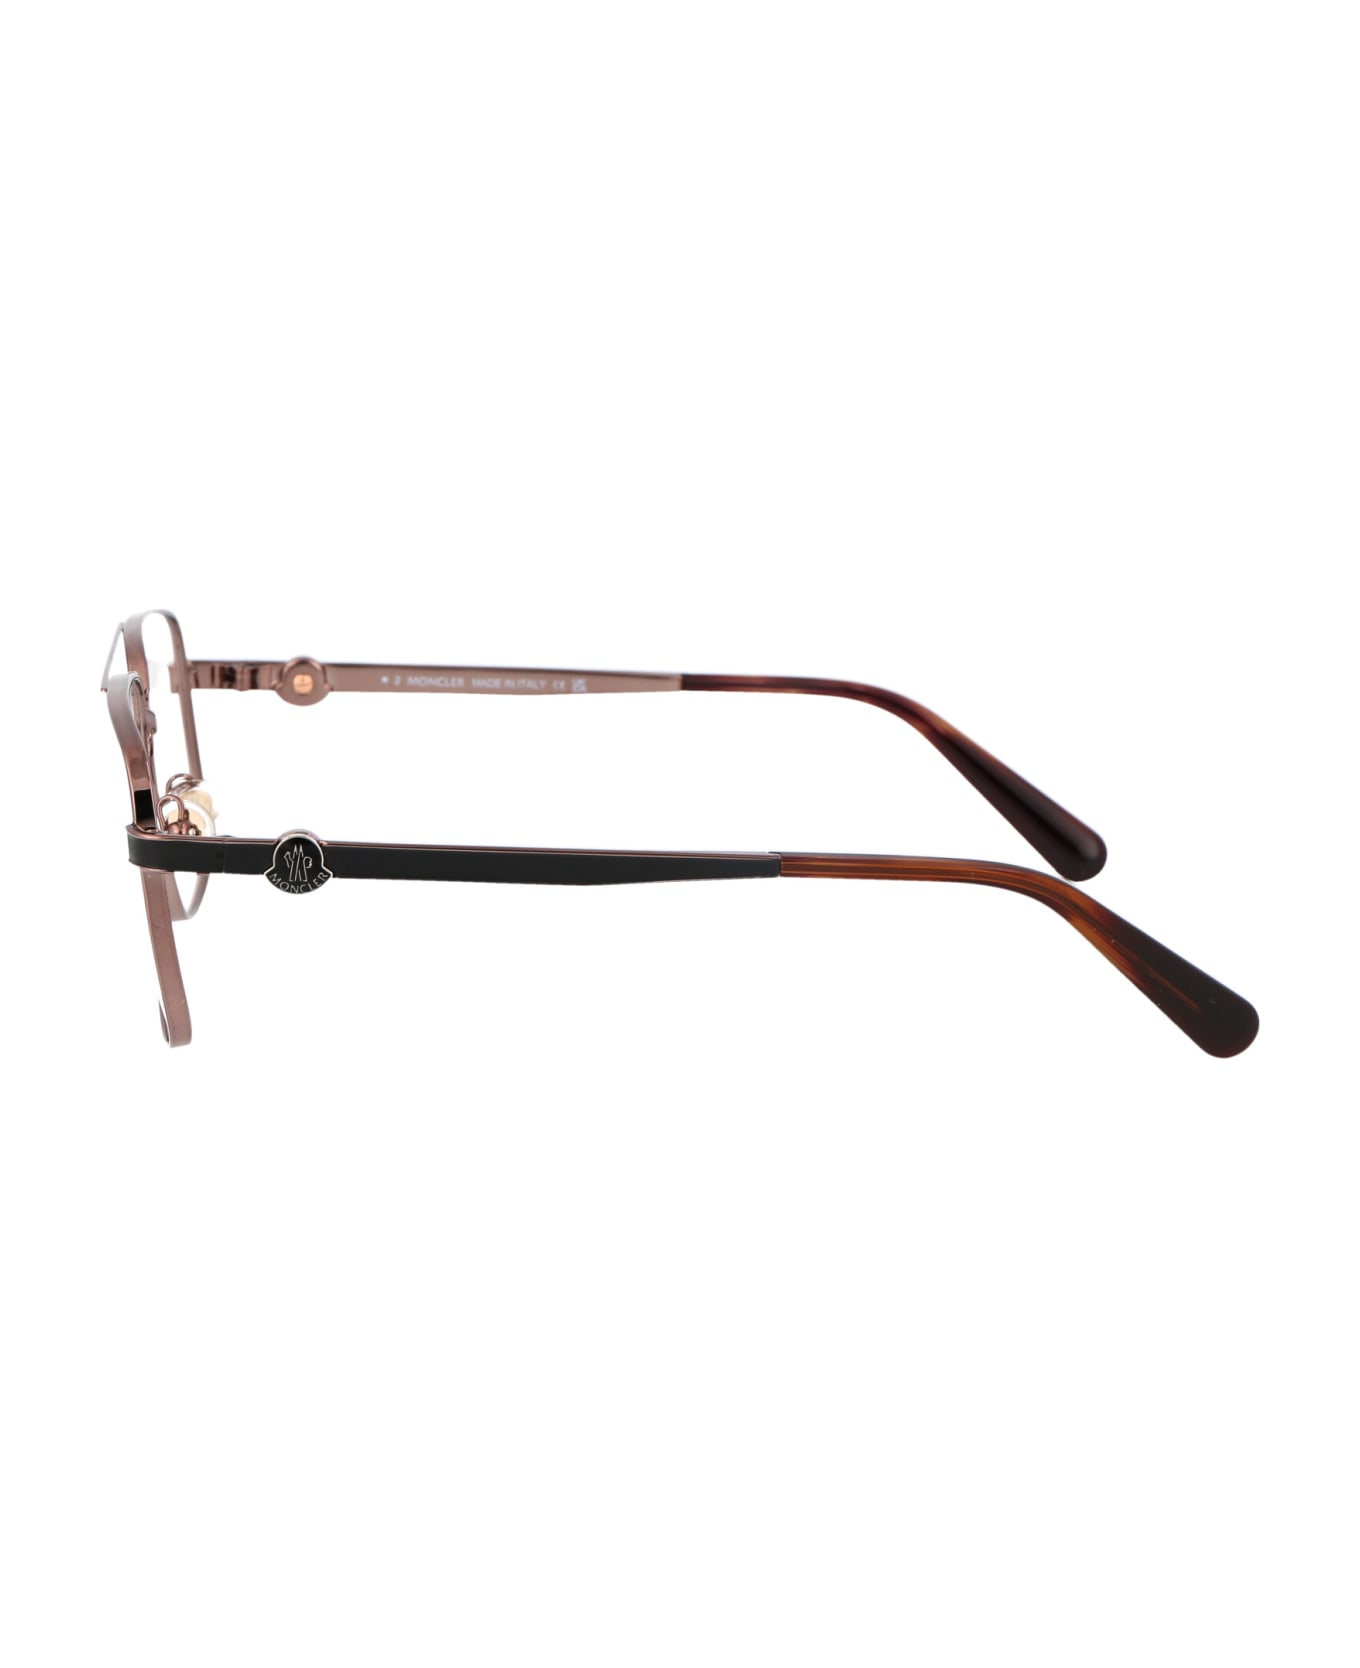 Moncler Eyewear Ml5178 Glasses - 036 Bronzo Scuro Lucido